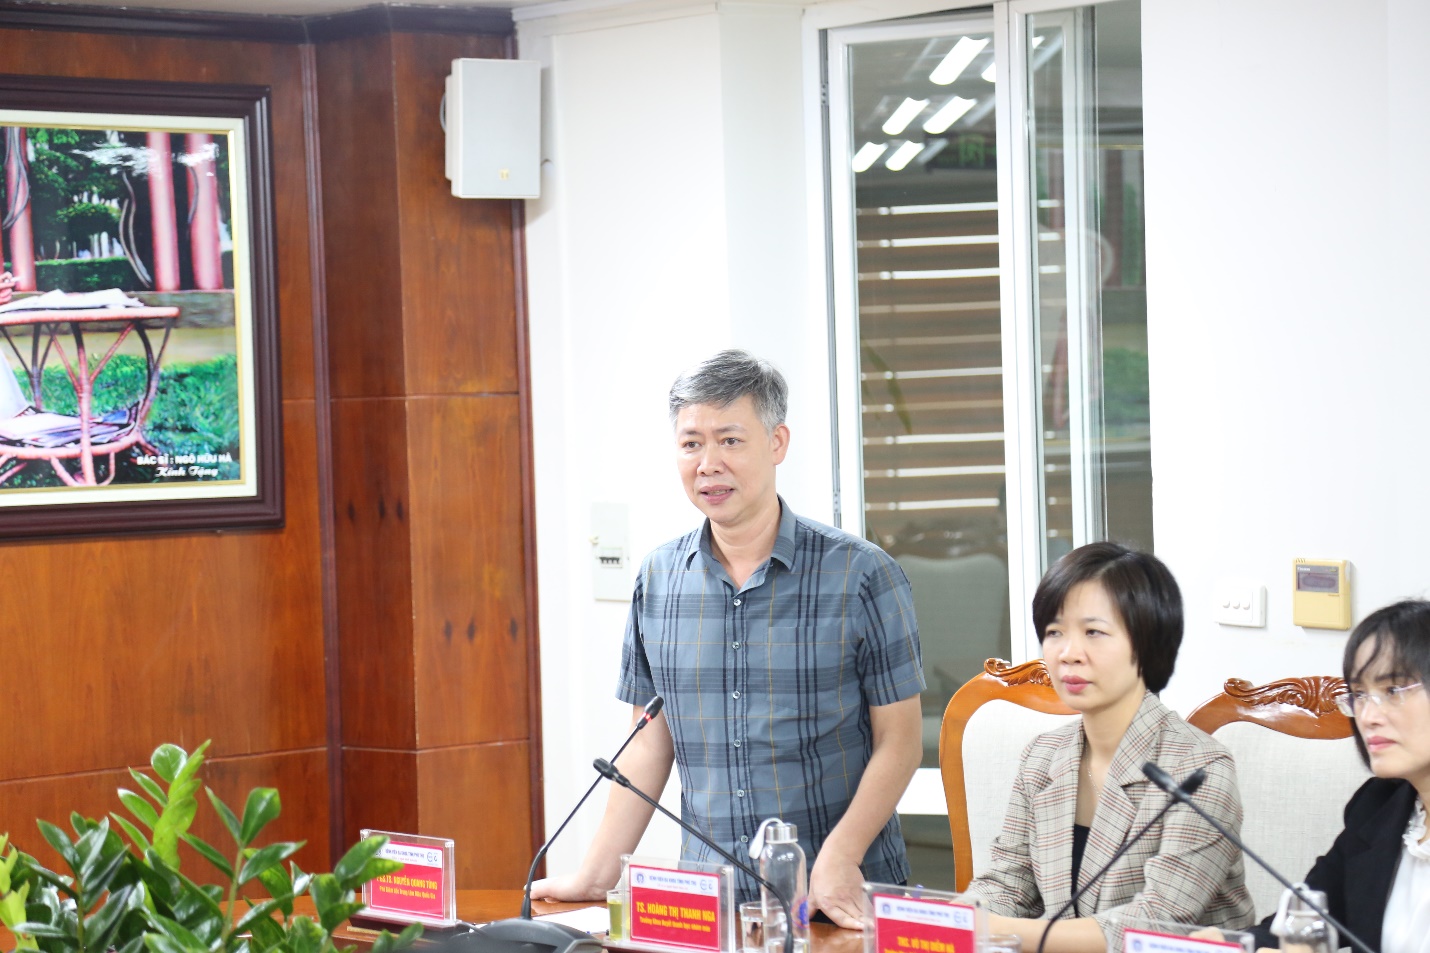 PGS.TS Nguyễn Quang Tùng, Phó Giám đốc Trung tâm Máu Quốc gia phát biểu tại chương trình